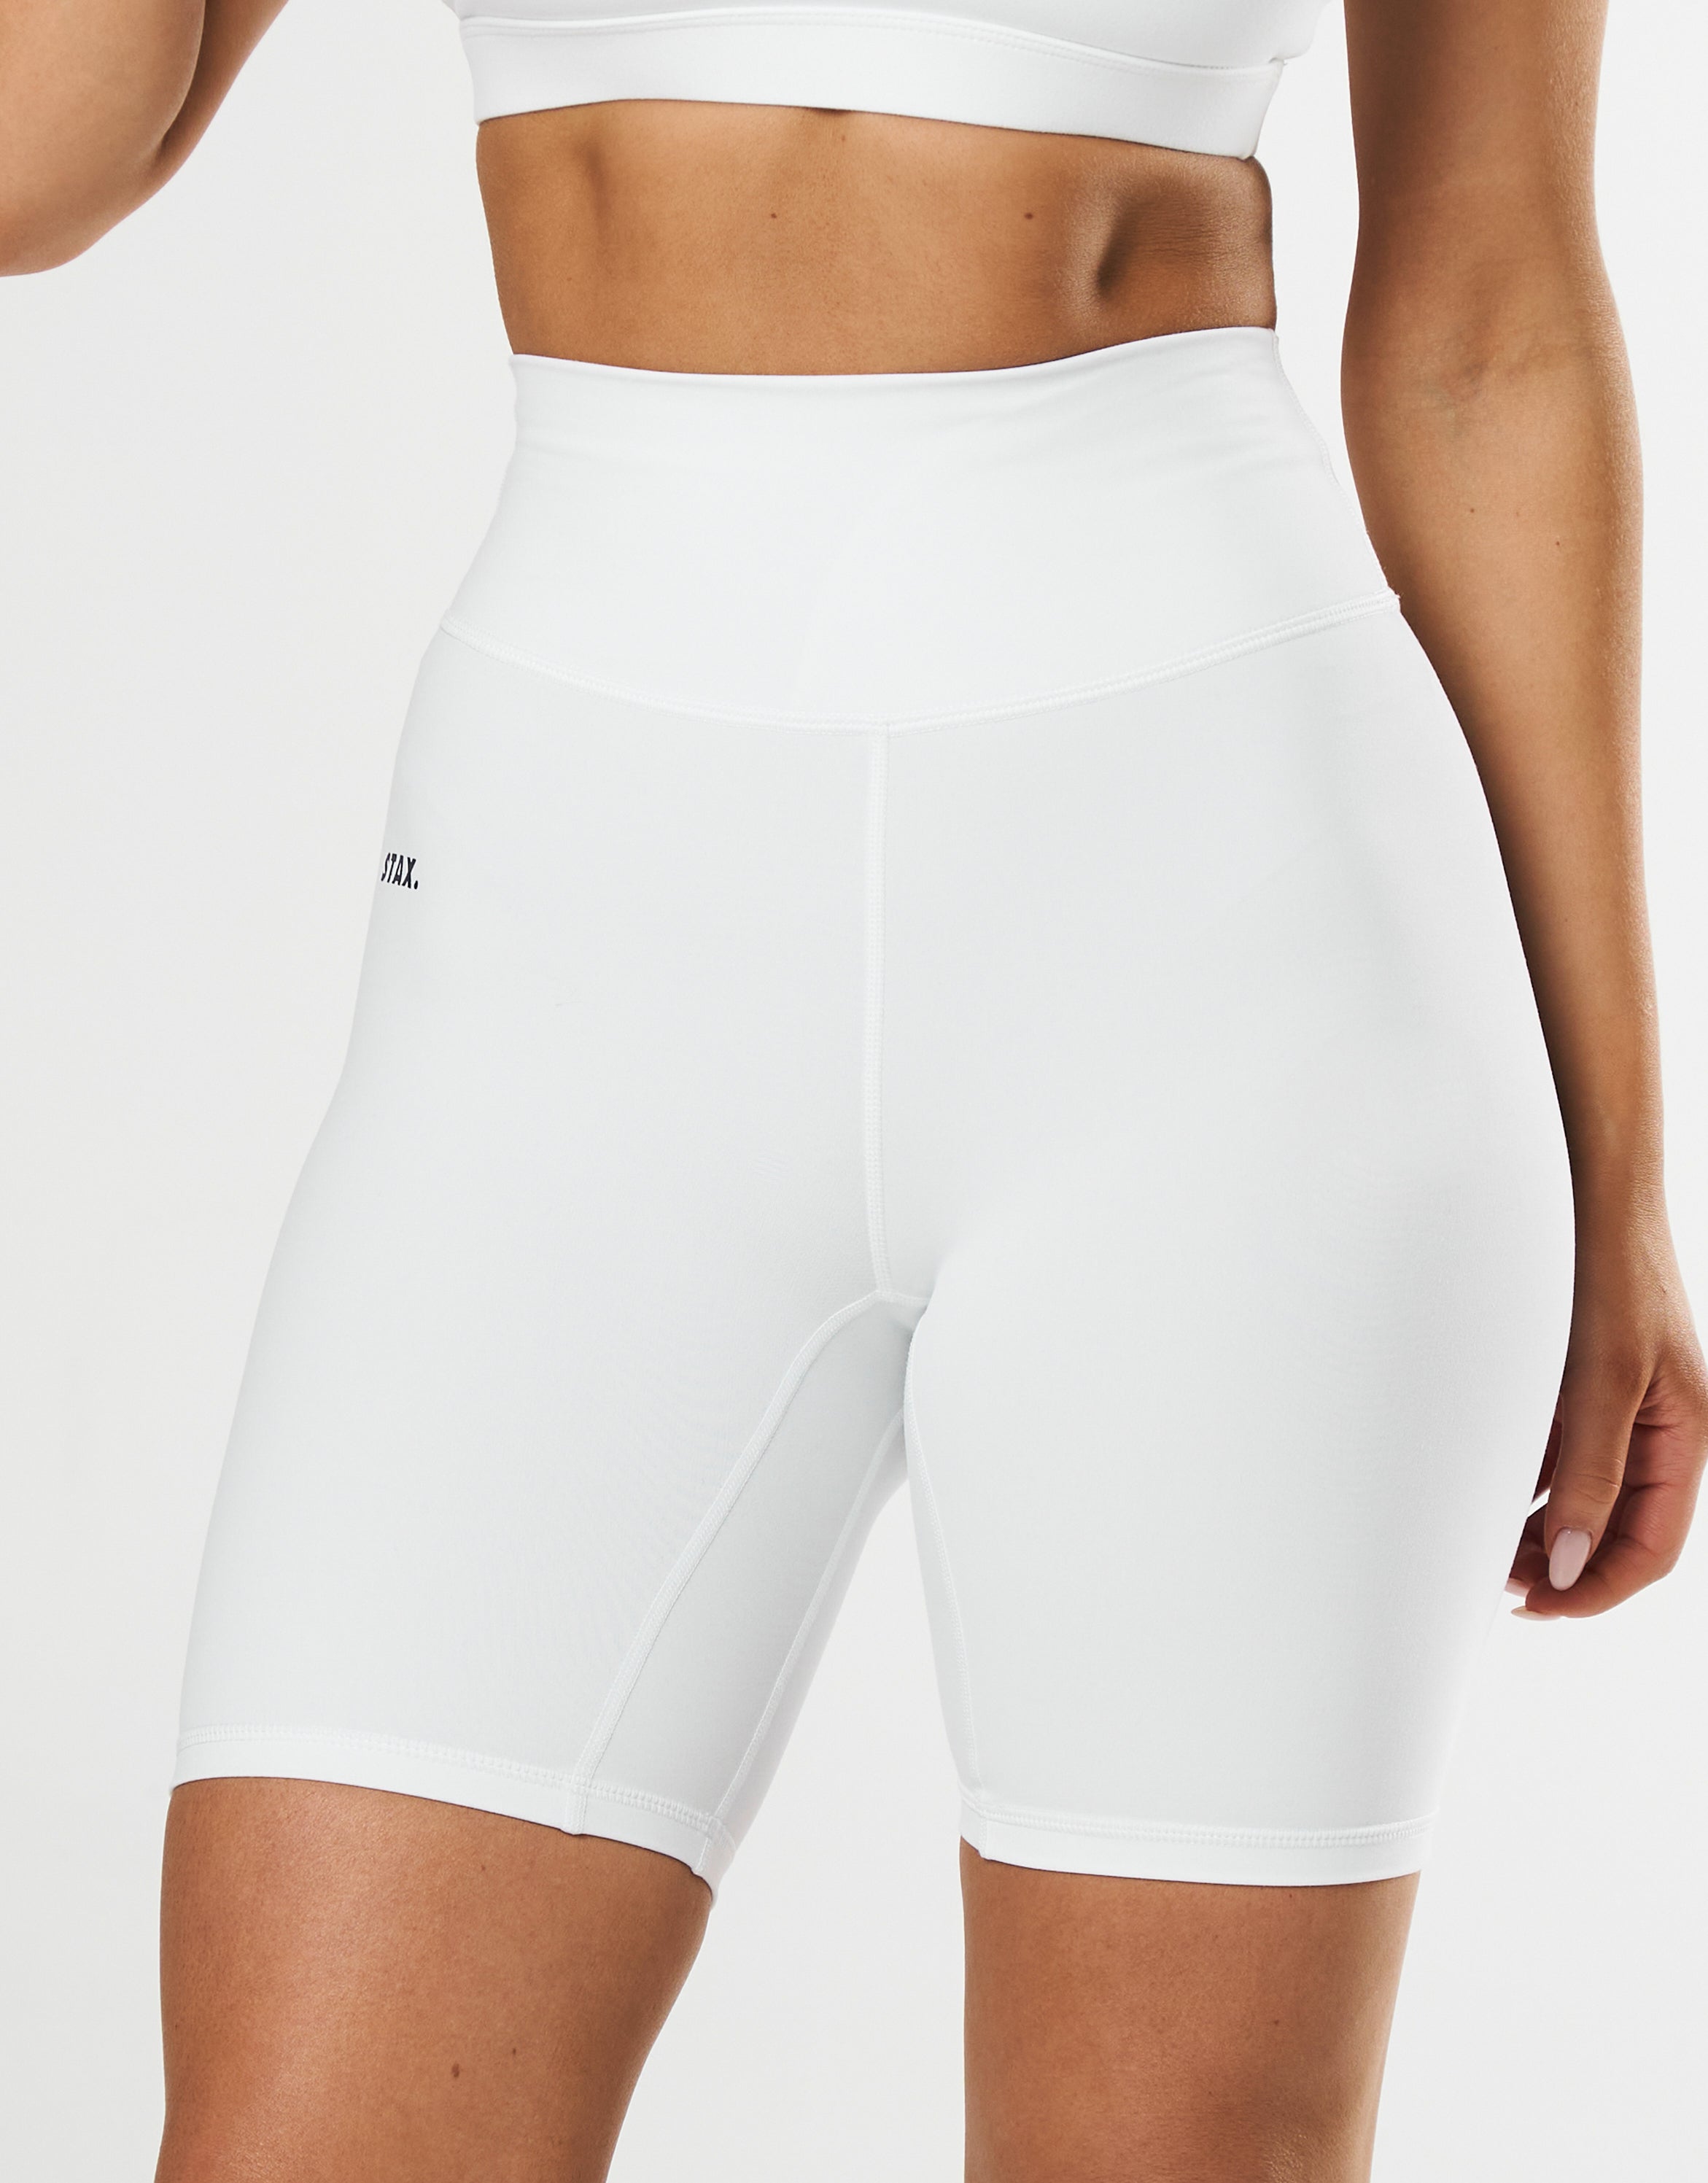 stax-original-bike-shorts-nandex-white